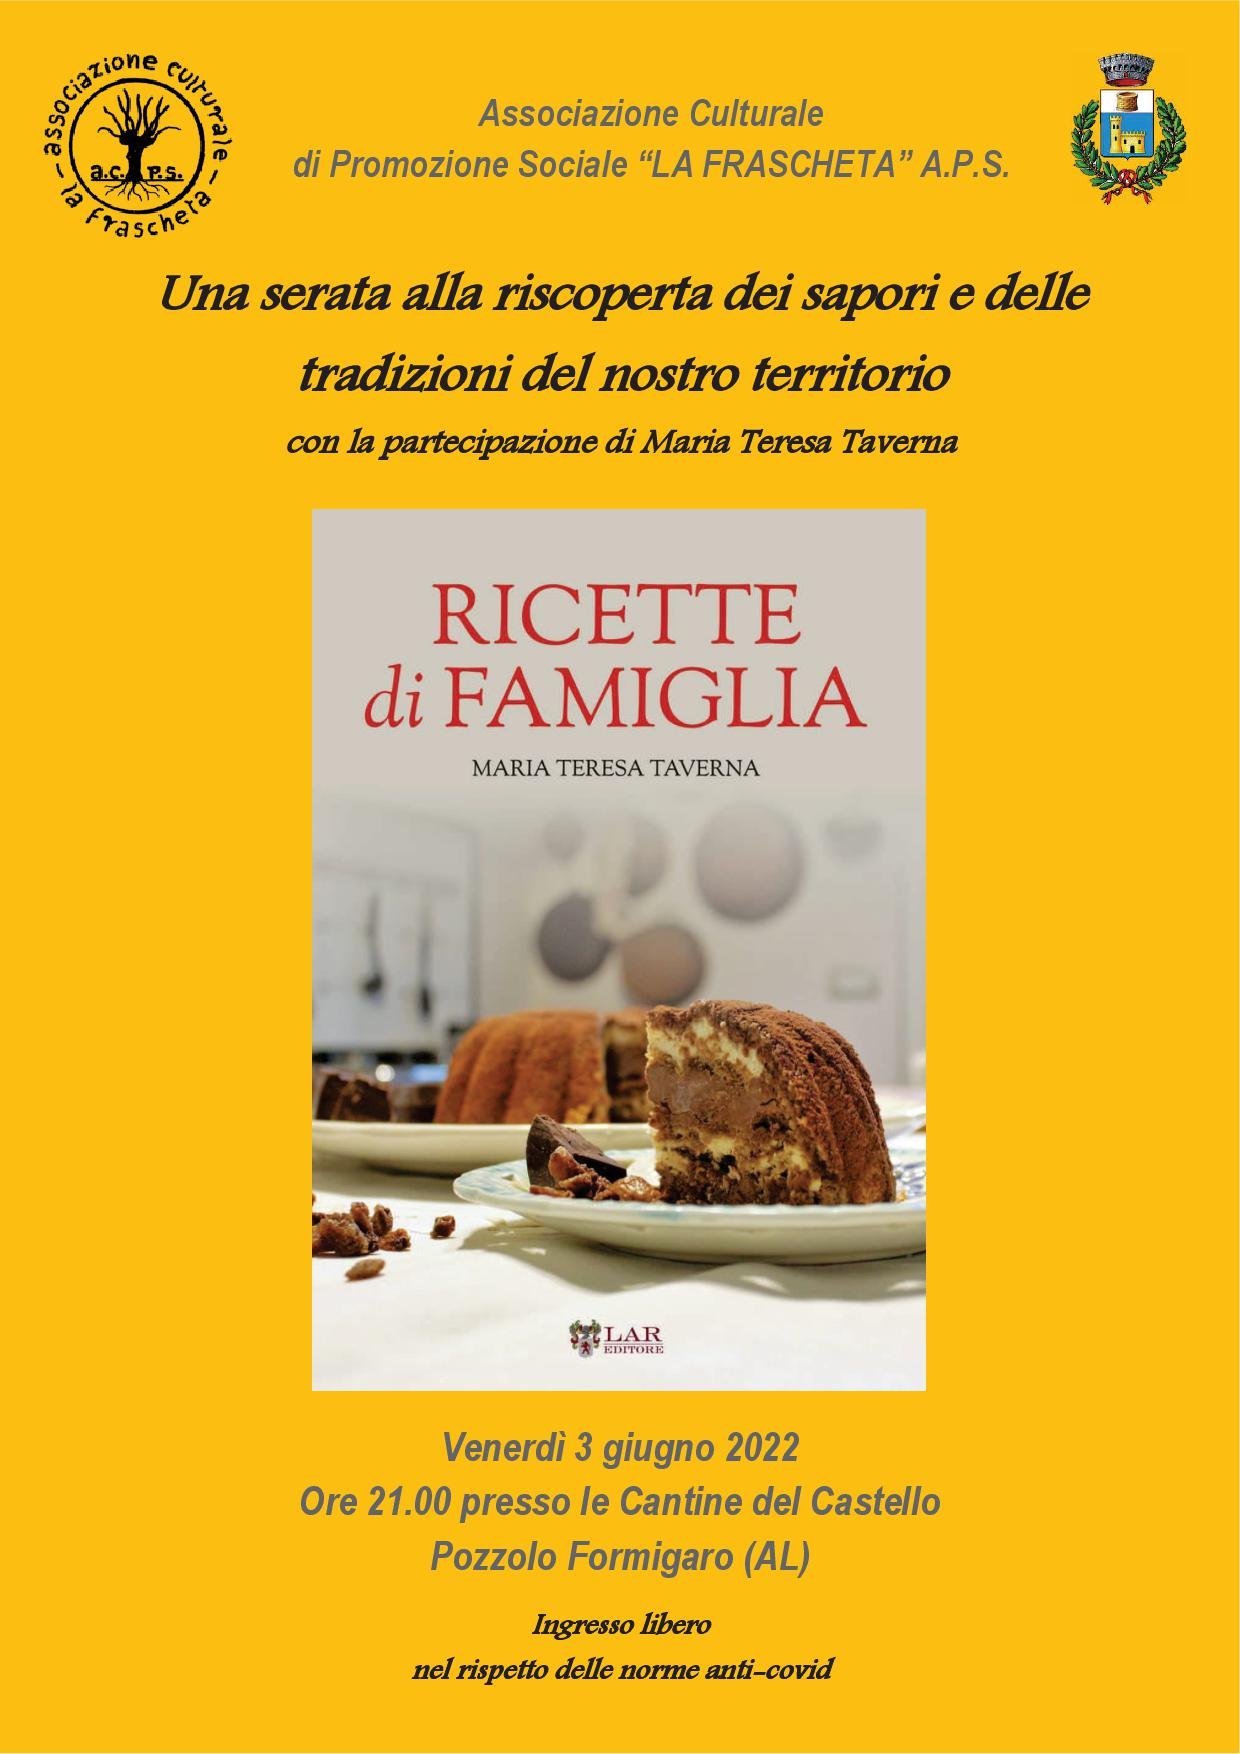 Venerdì 3 giugno Maria Teresa Taverna presenta il suo libro “Ricette di famiglia”